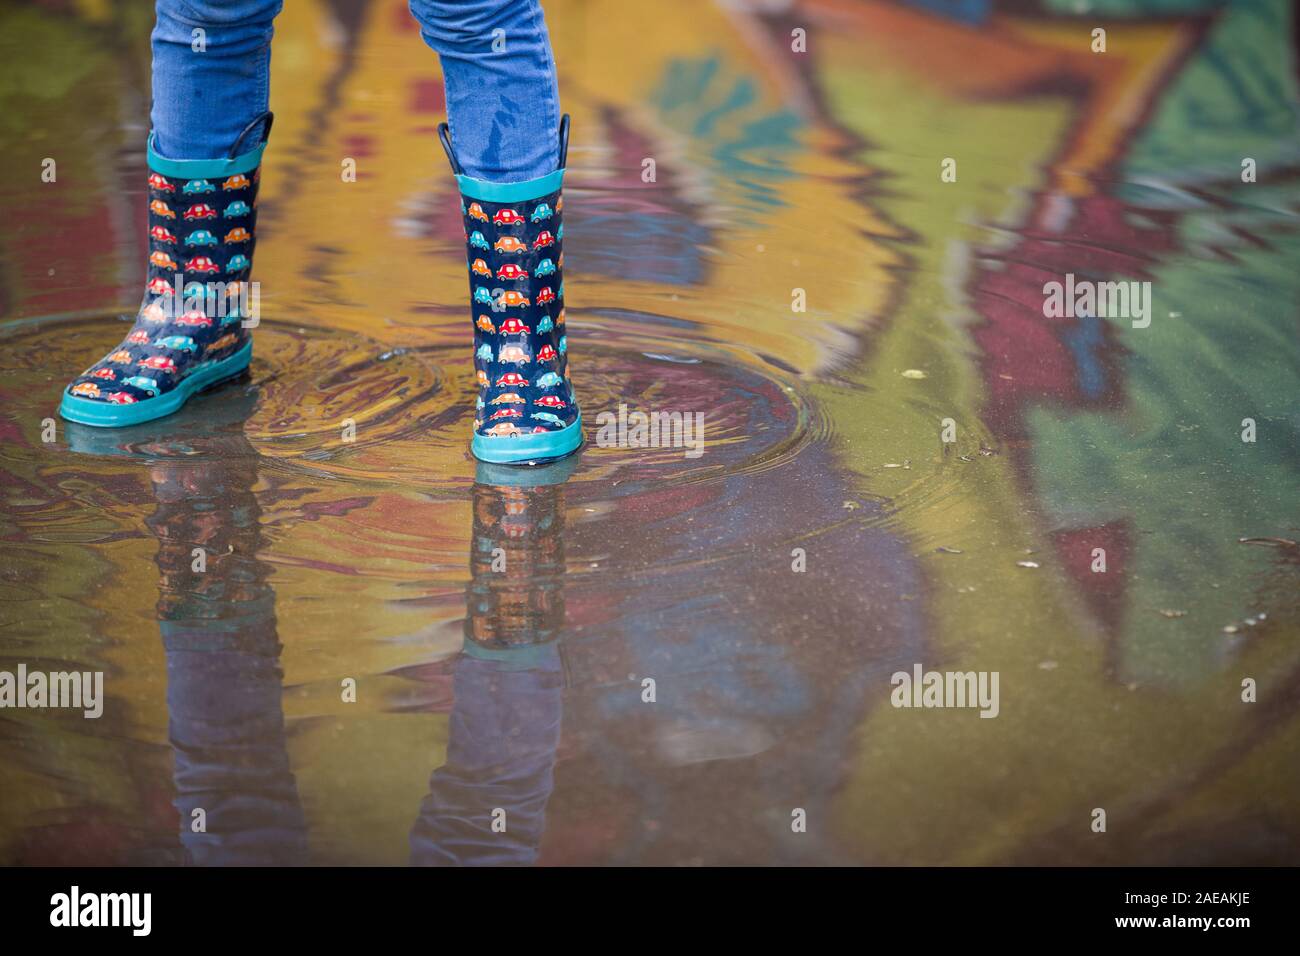 Kind Junge in lustige Gummistiefel in der Pfütze auf der Straße nach Regen. Paar bunte Gummistiefel in einer großen Pfütze mit Graffiti Reflexionen Stockfoto